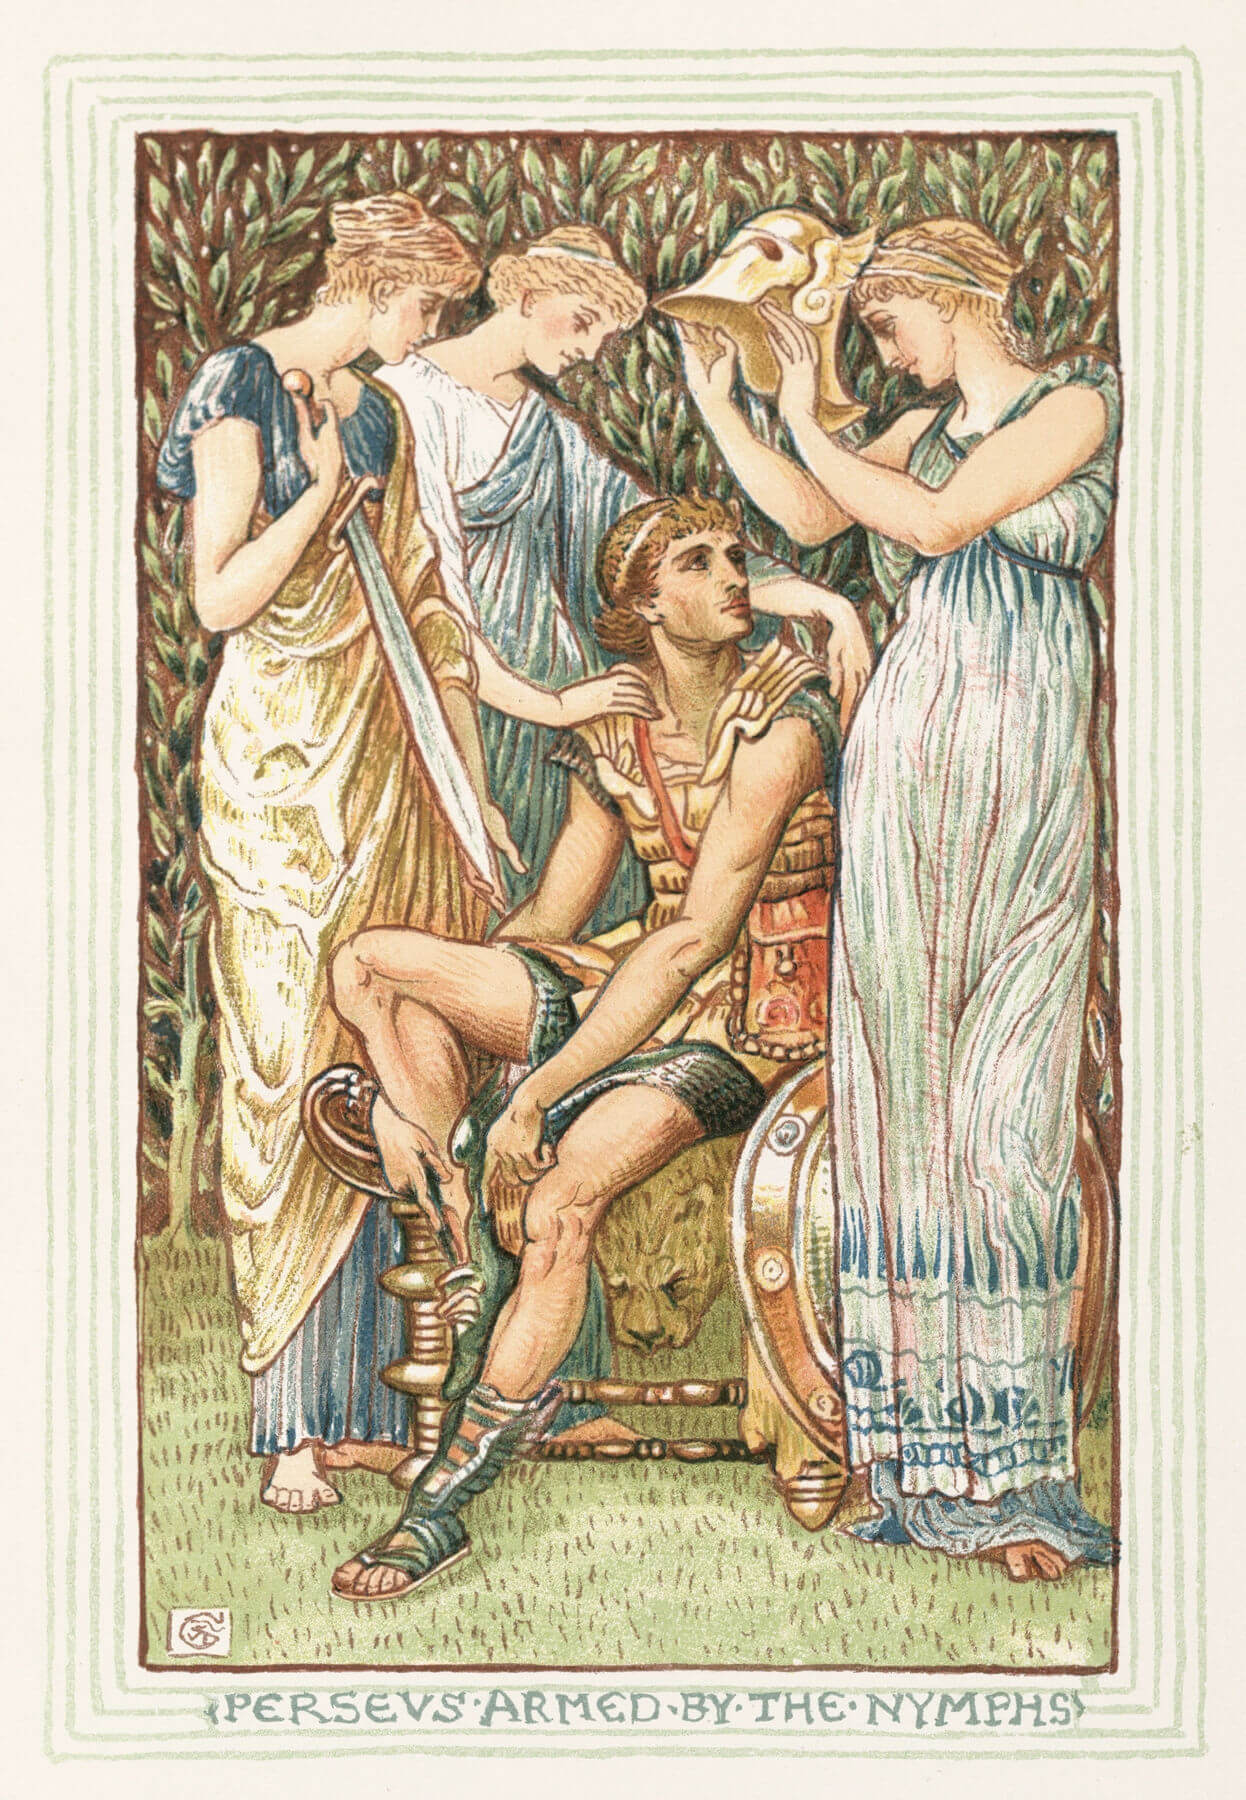 Perseus wird von den Nymphen mit den Waffen der Götter ausgestattet: Die geflügelten Schuh von Hermes hat er schon an, das Schwert des Hephaistos wird im gereicht, die Kappe von Hades wird im aufgesetzt und rechts an ihn gelehnt ist das Schild von Athene.